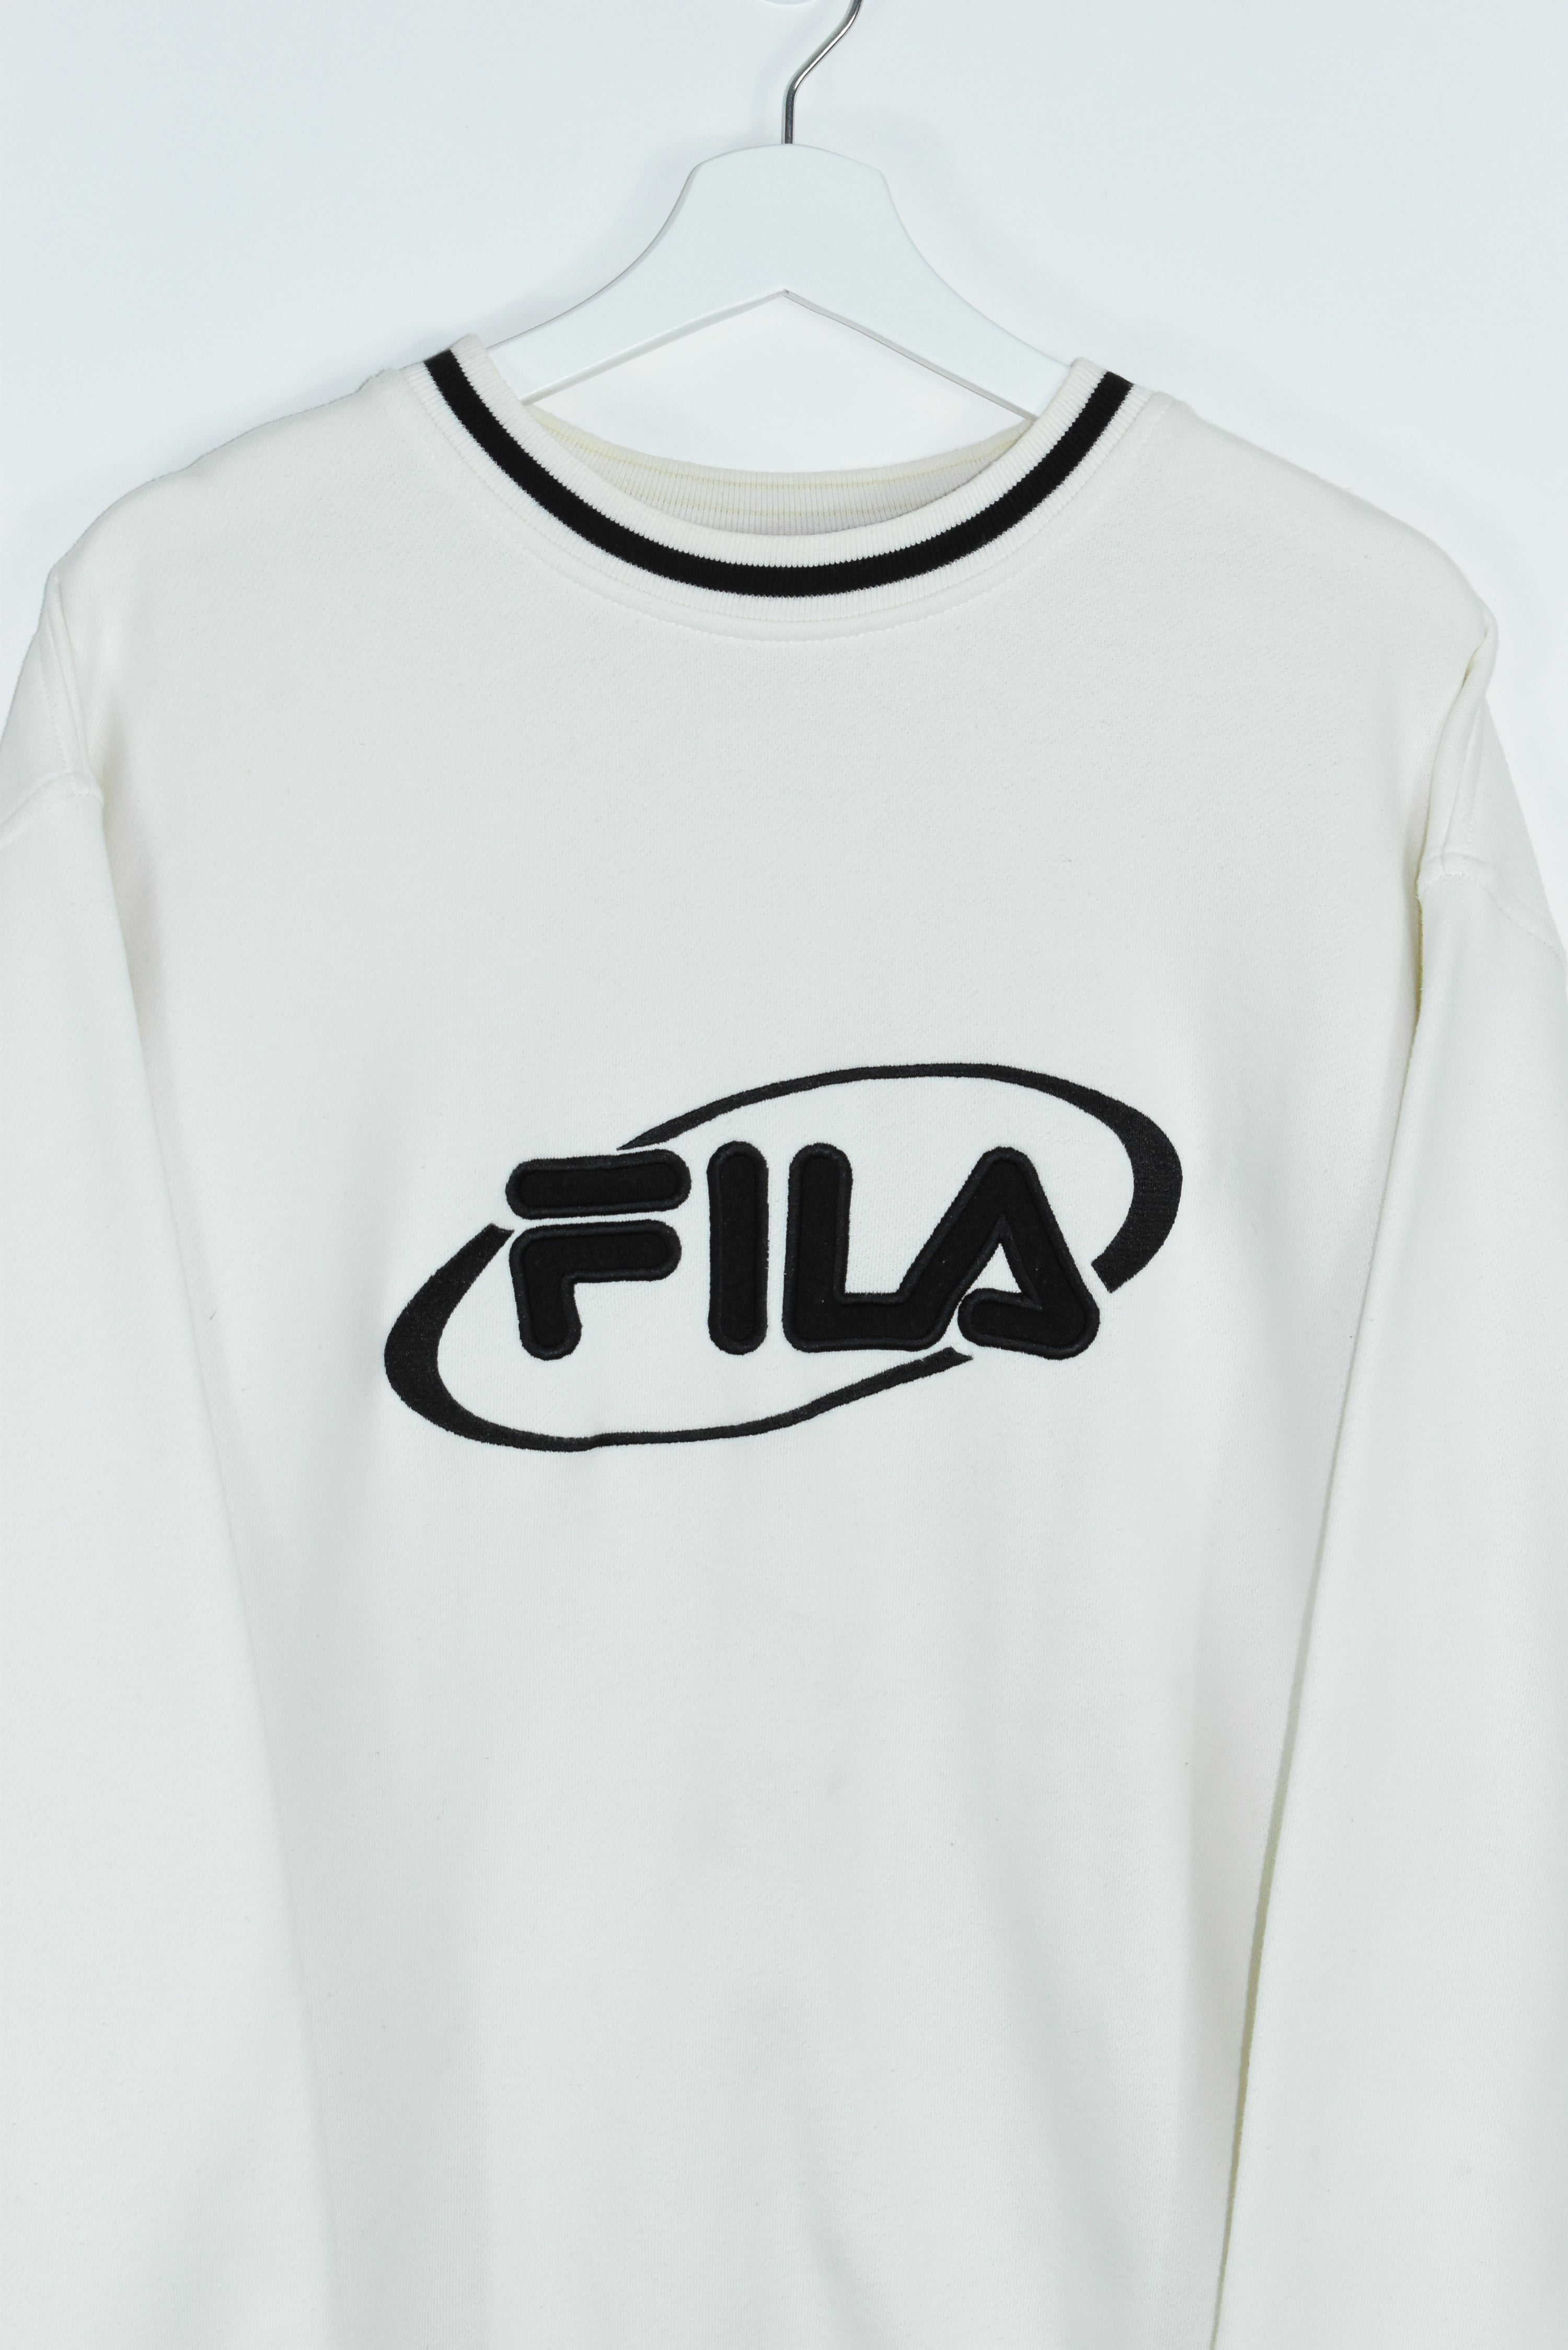 Vintage Fila Embroidery Sweatshirt L/ Xlarge